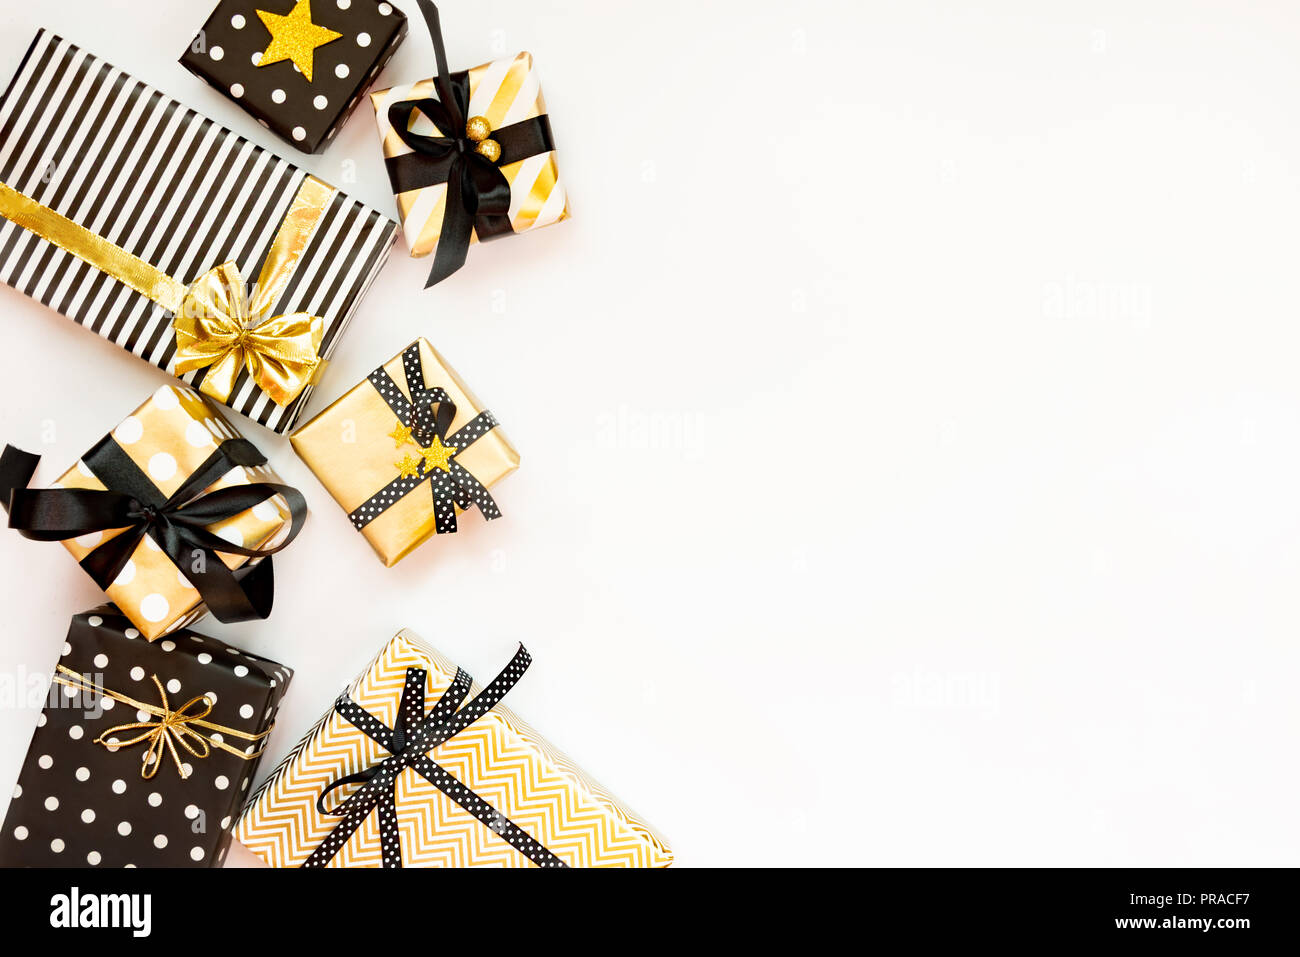 Vista superiore delle confezioni regalo in vari nero, bianco e disegni dorati. Laici piana, copia dello spazio. Un concetto di Natale, Capodanno, Festa di compleanno evento. Foto Stock